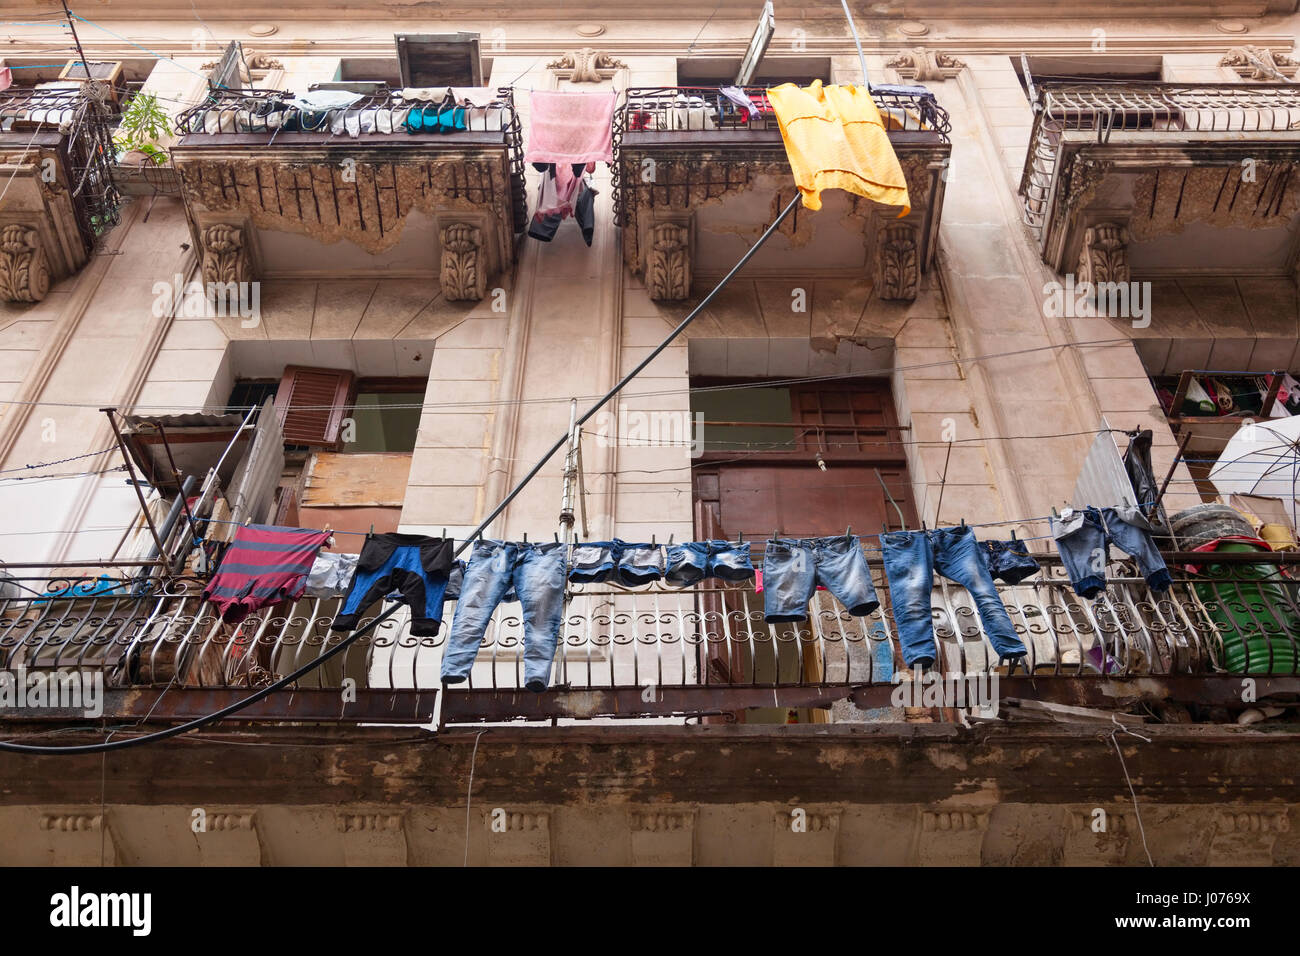 Vêtements pour sécher les vêtements suspendus sur les lignes à l'extérieur d'un immeuble de la Vieille Havane, Cuba. Banque D'Images